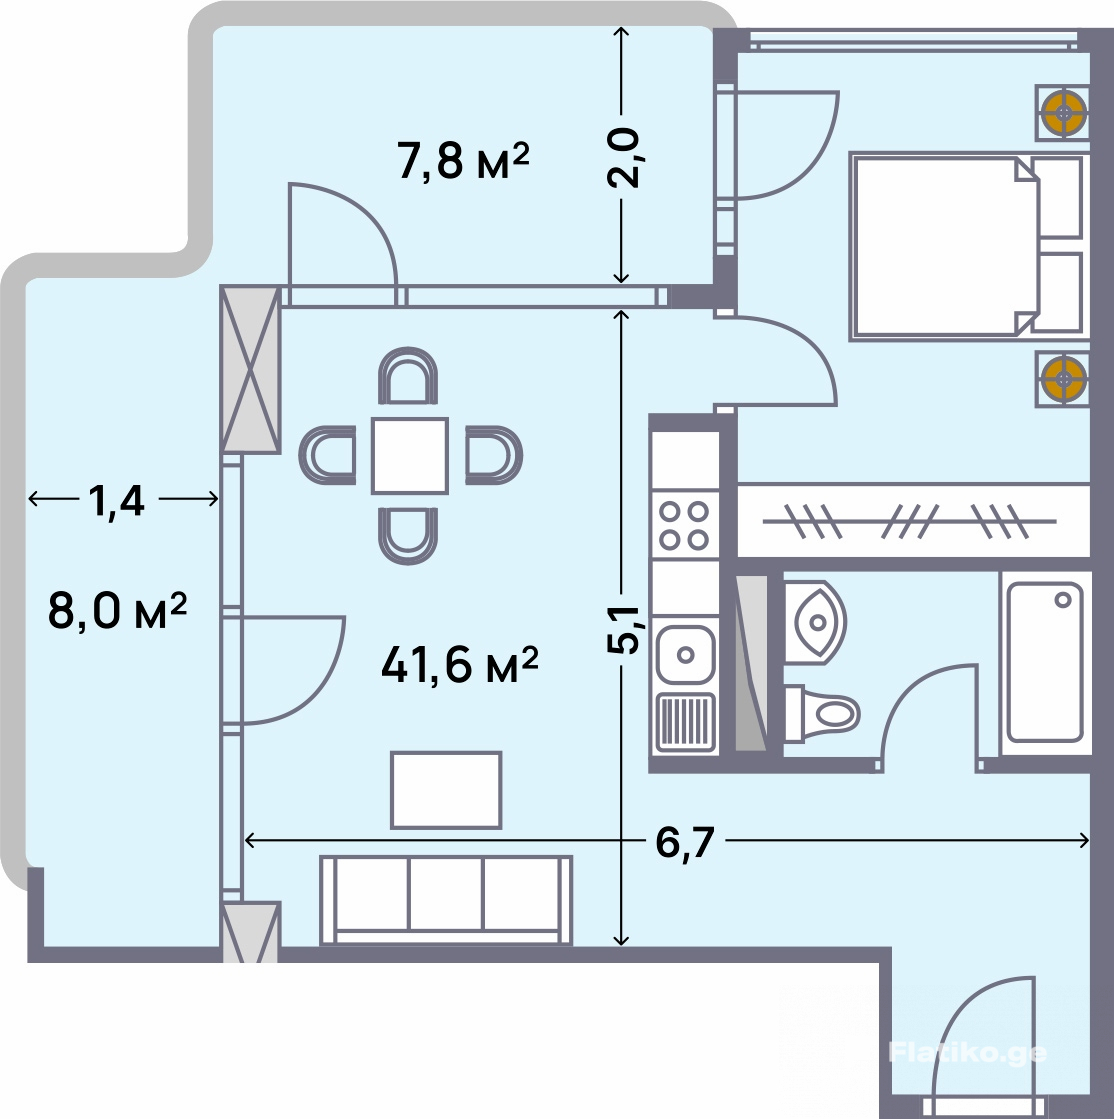 2-Bedroom